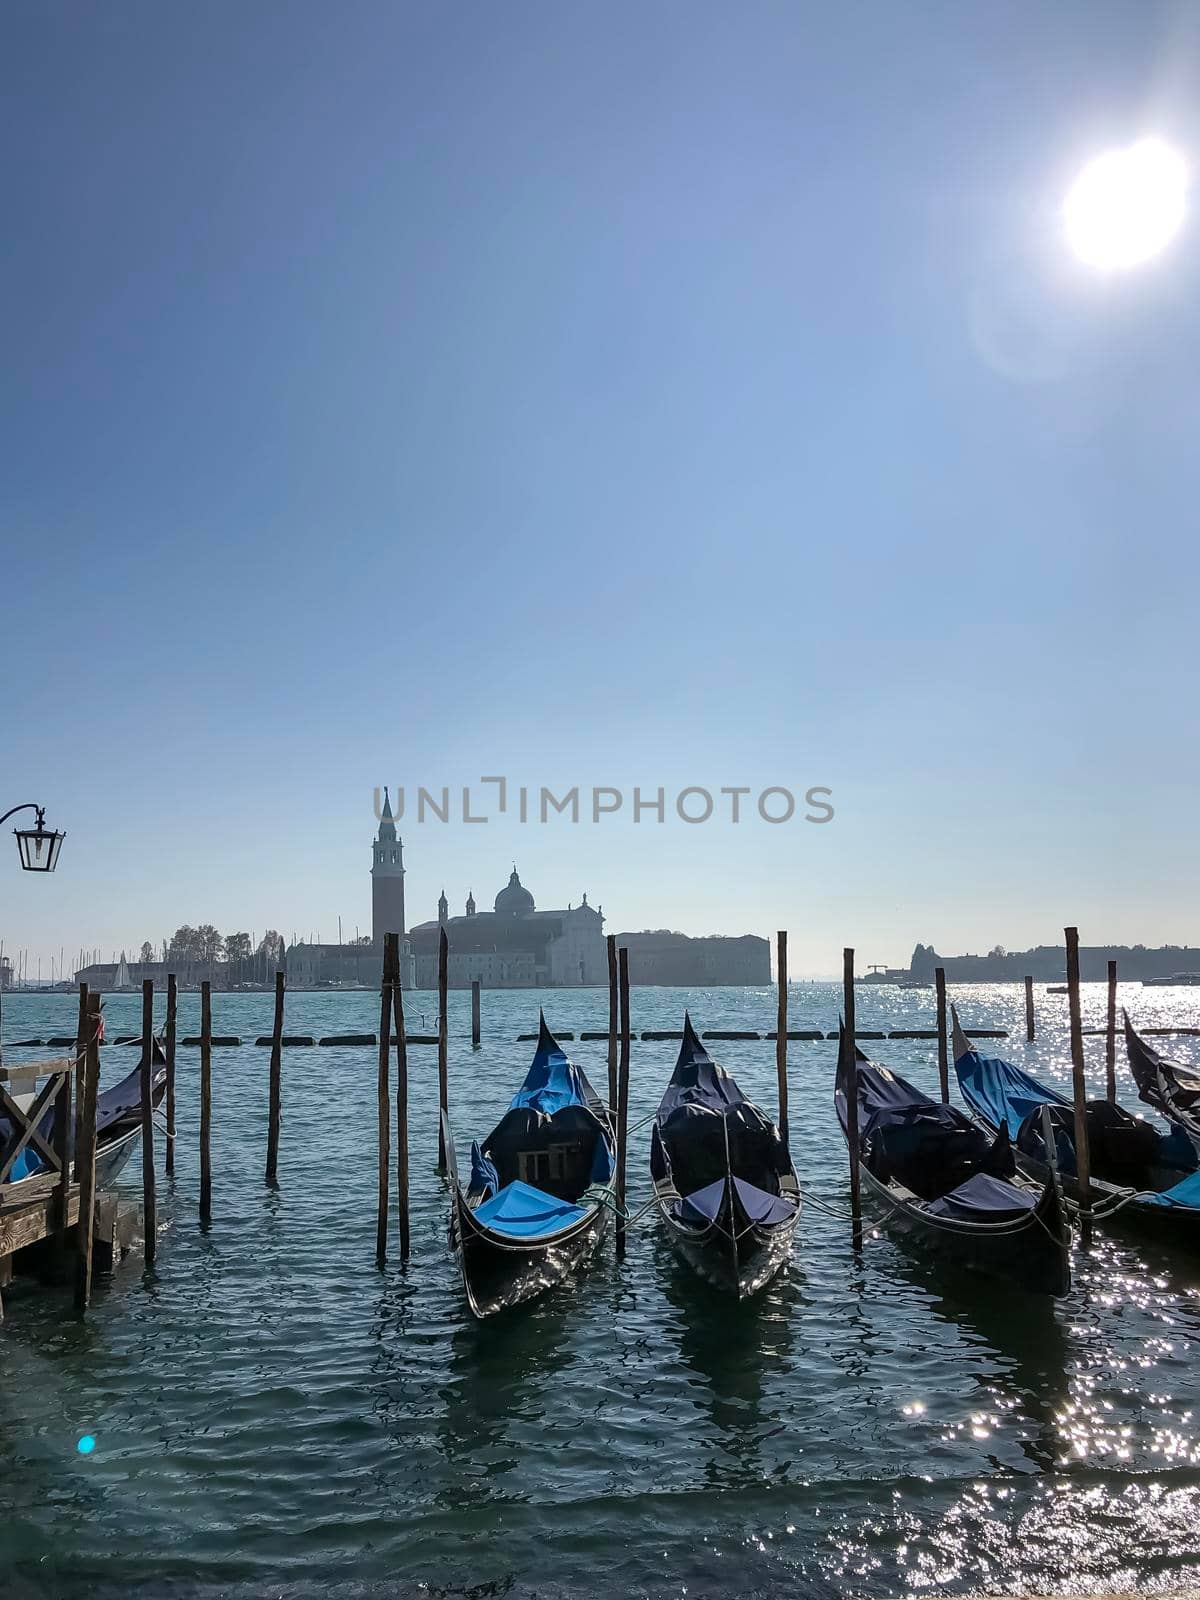 San Giorgio Maggiore island seen from San Marco square in Venice, Italy by kaliaevaen